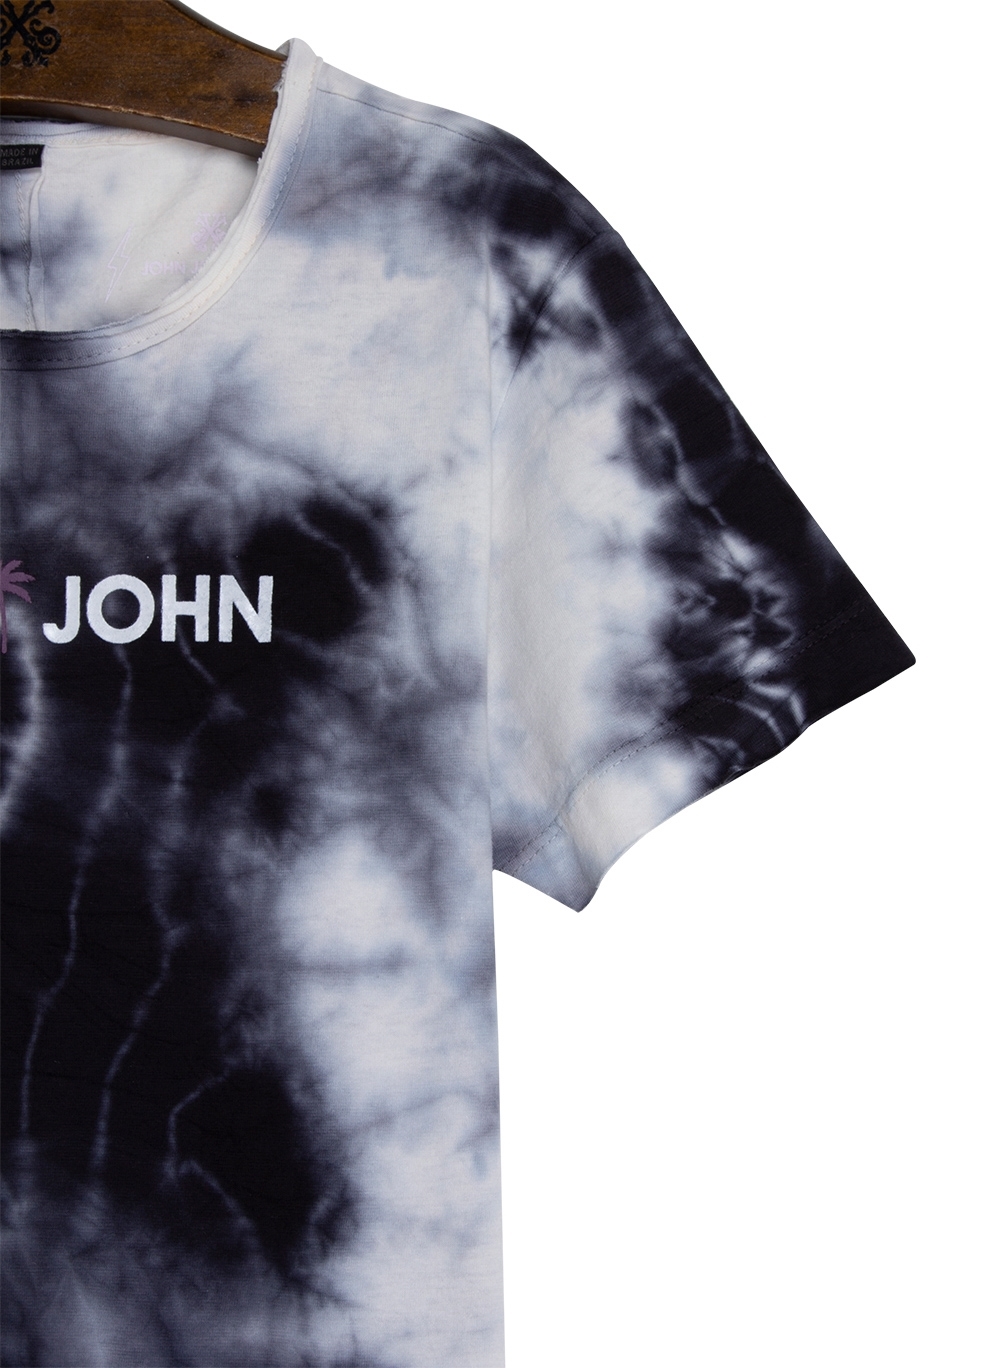 1 Camisa Camiseta John John Masculina - Roupas - Brotas, Salvador  1246192920